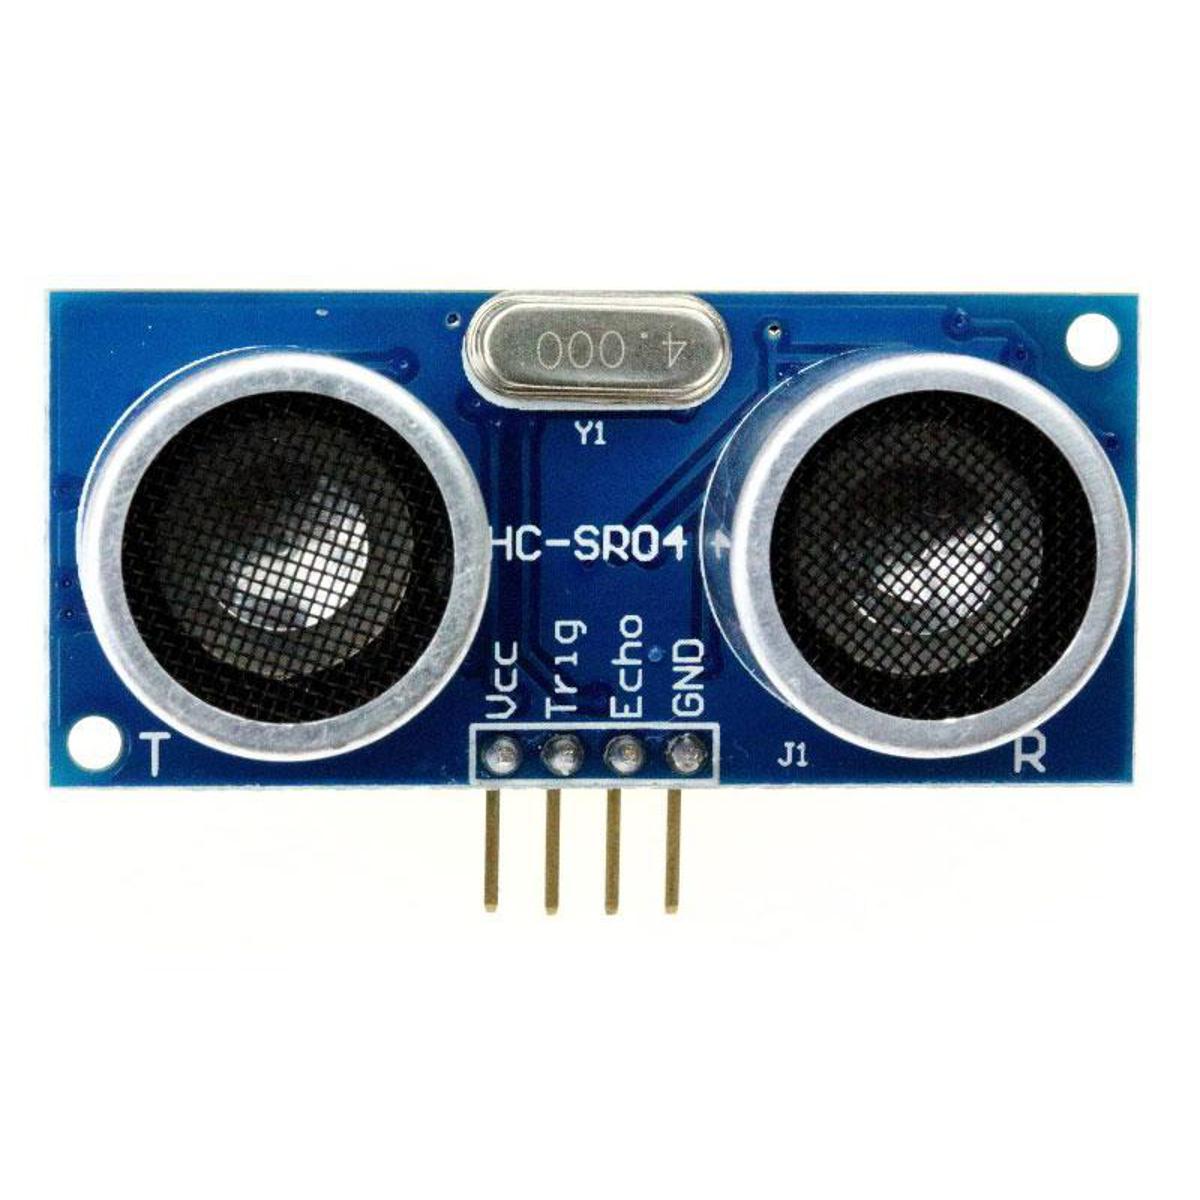 SK500 Portable Live Sound Voice Changer Device Audio Mixer Kit